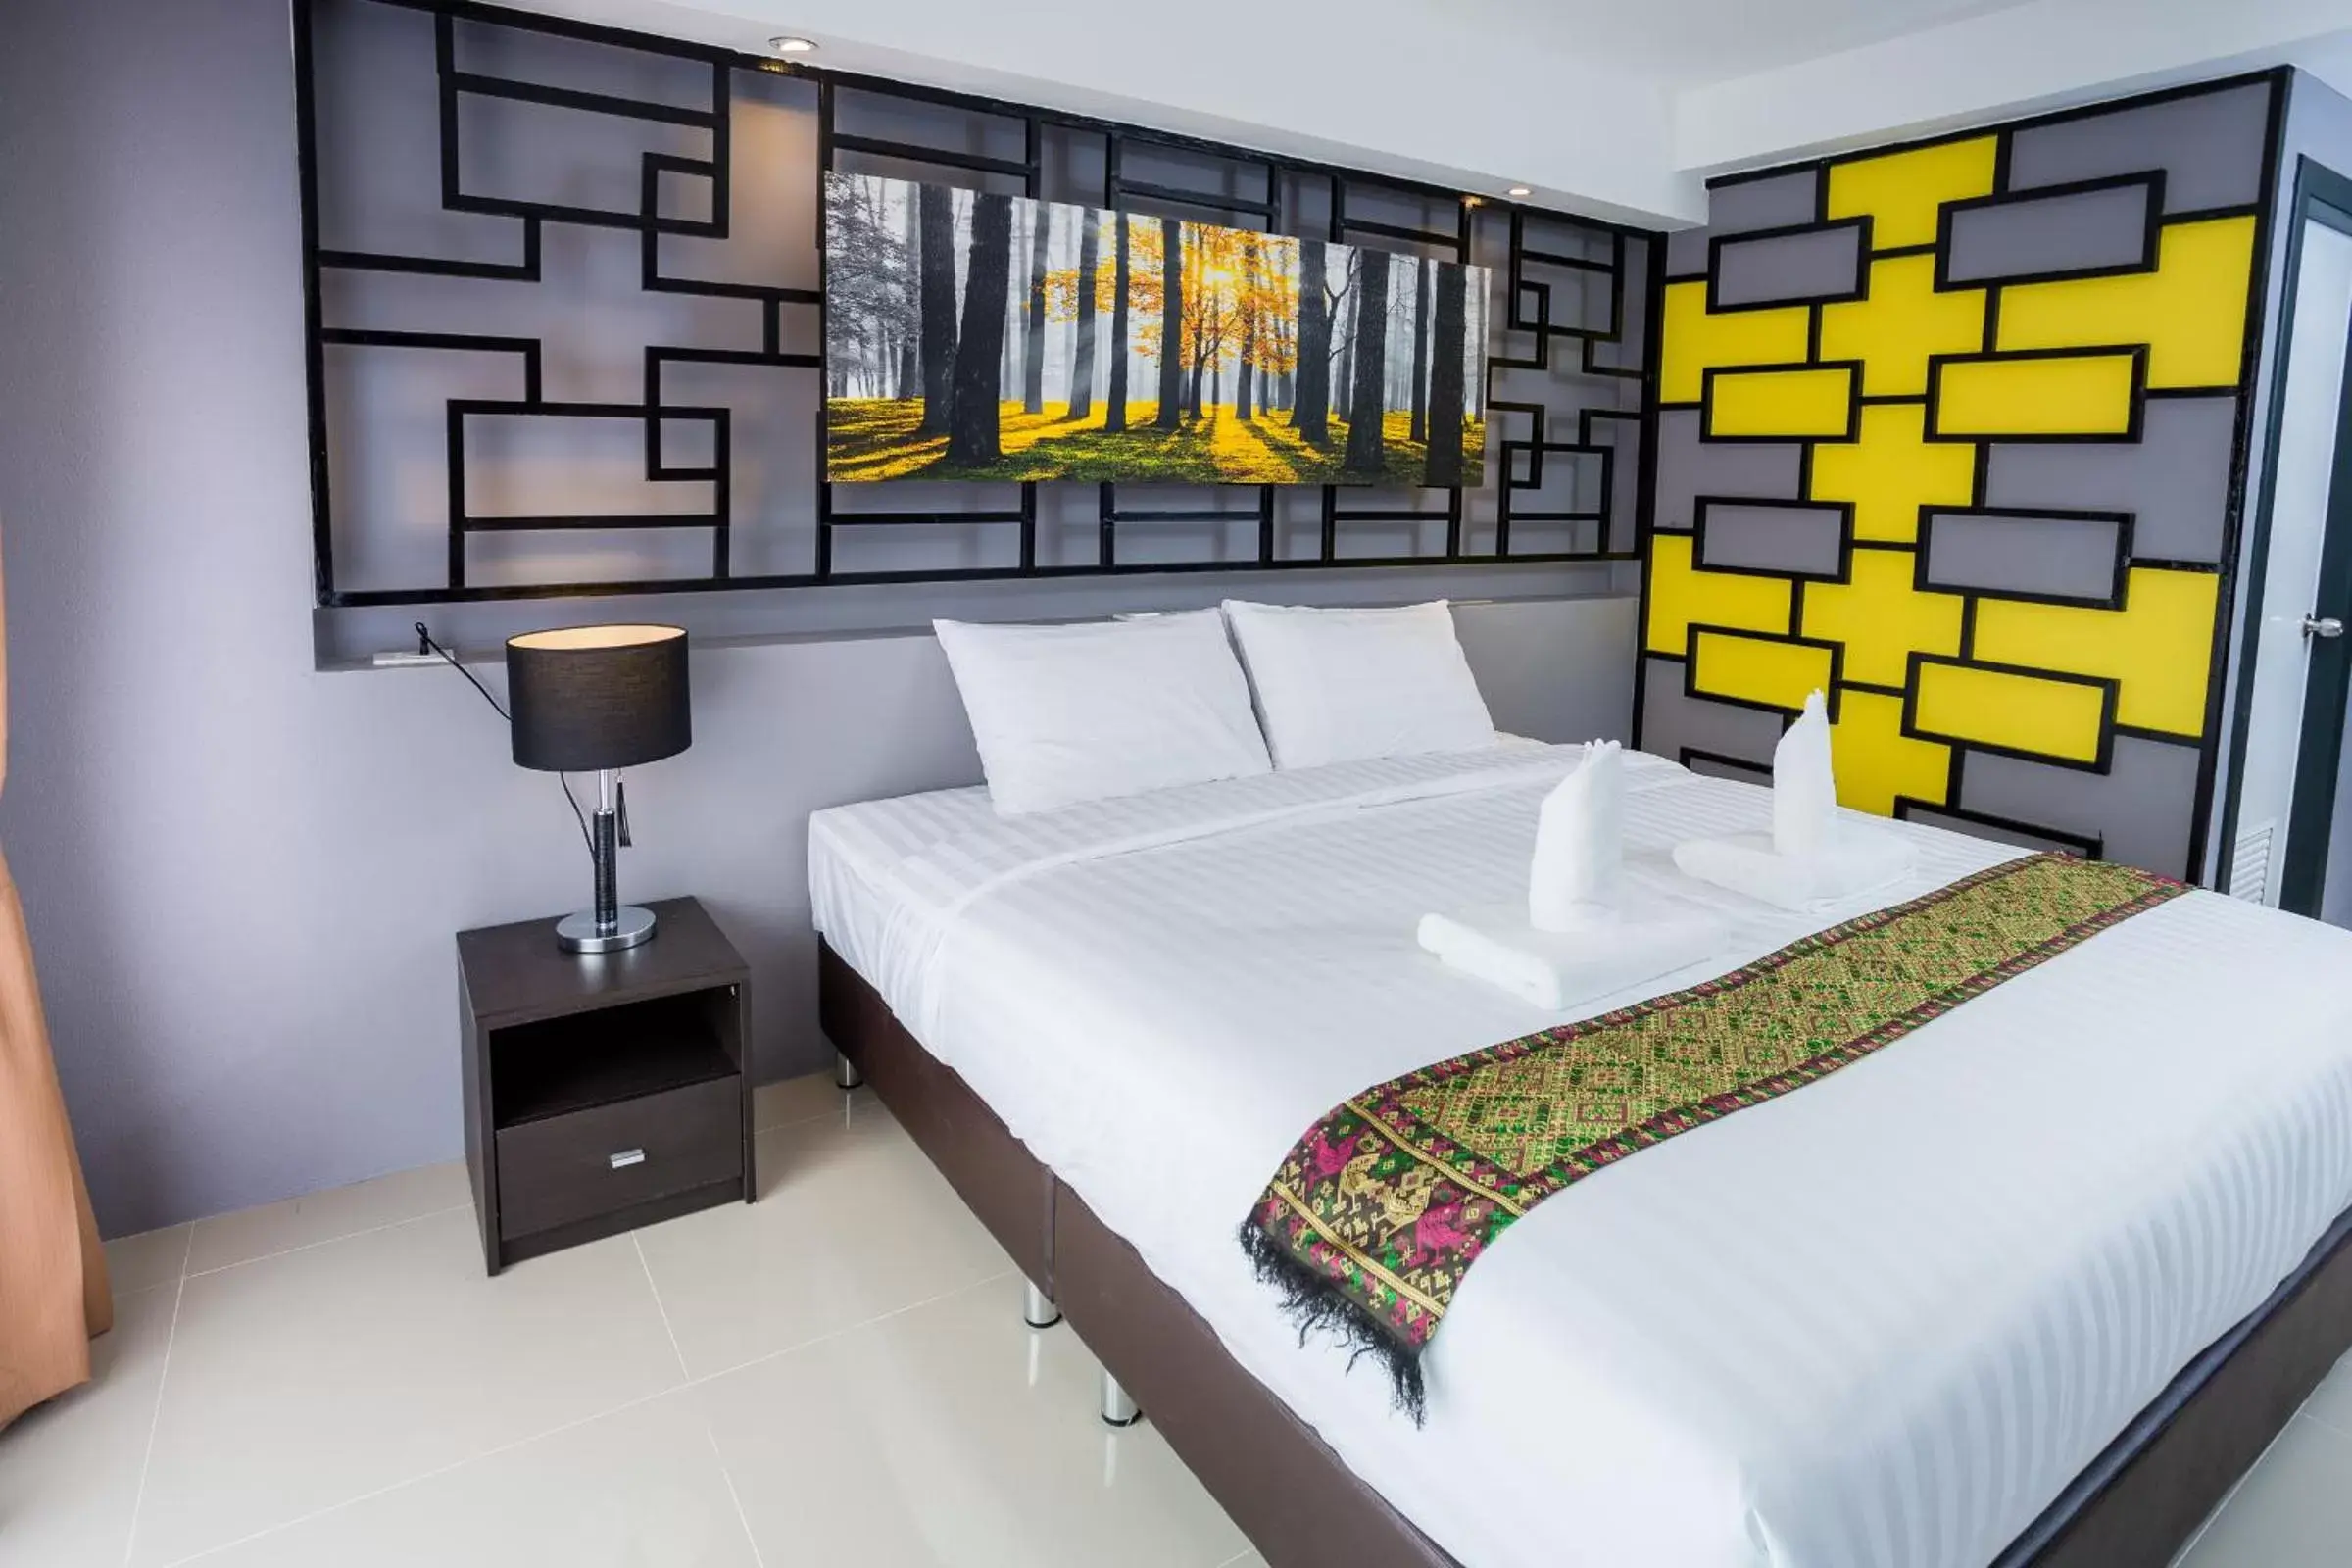 Bed in PP@Hotel Rangsit